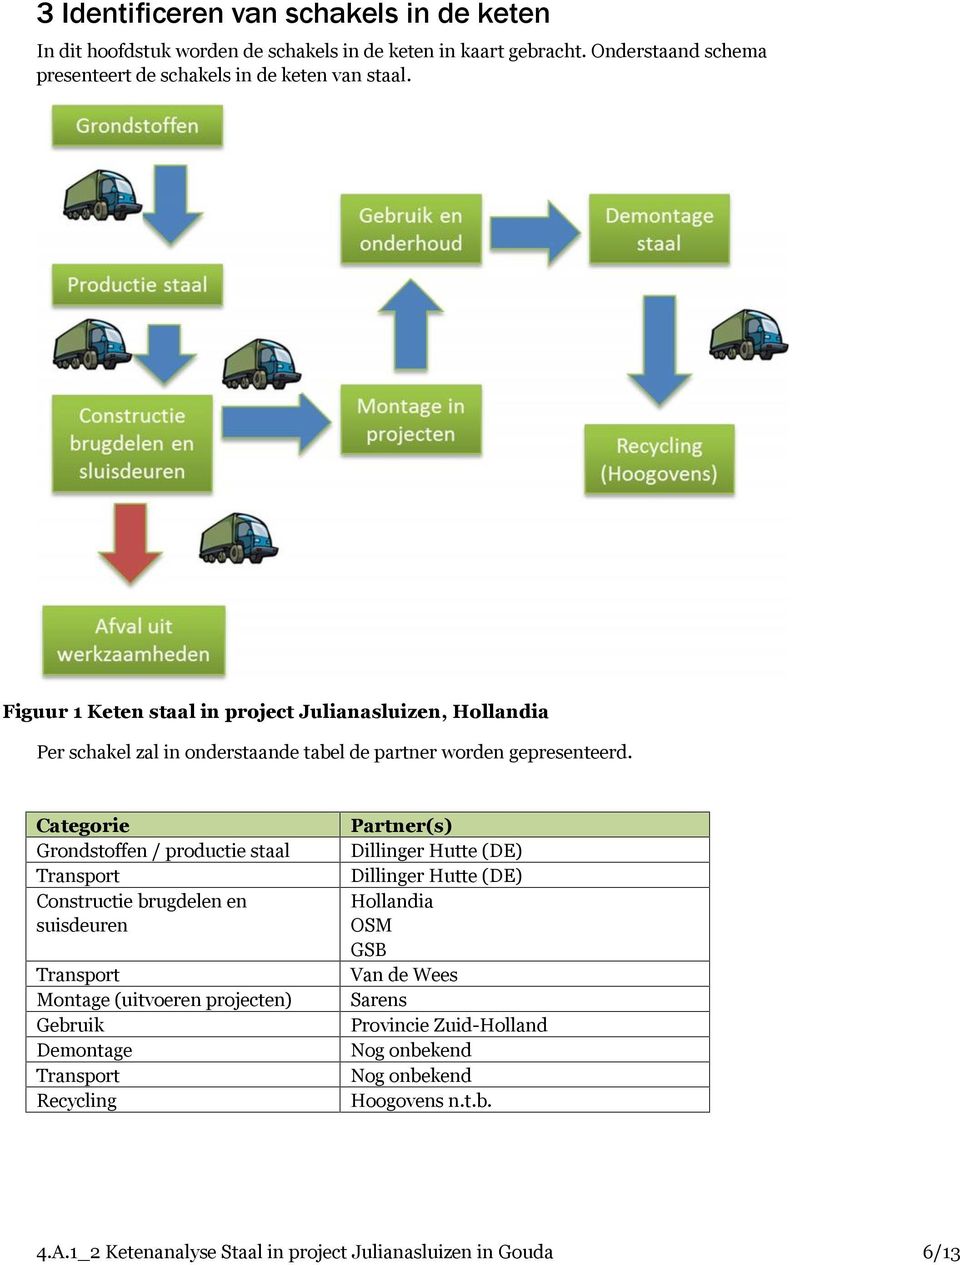 Categorie Grondstoffen / productie staal Transport Constructie brugdelen en suisdeuren Transport Montage (uitvoeren projecten) Gebruik Demontage Transport Recycling